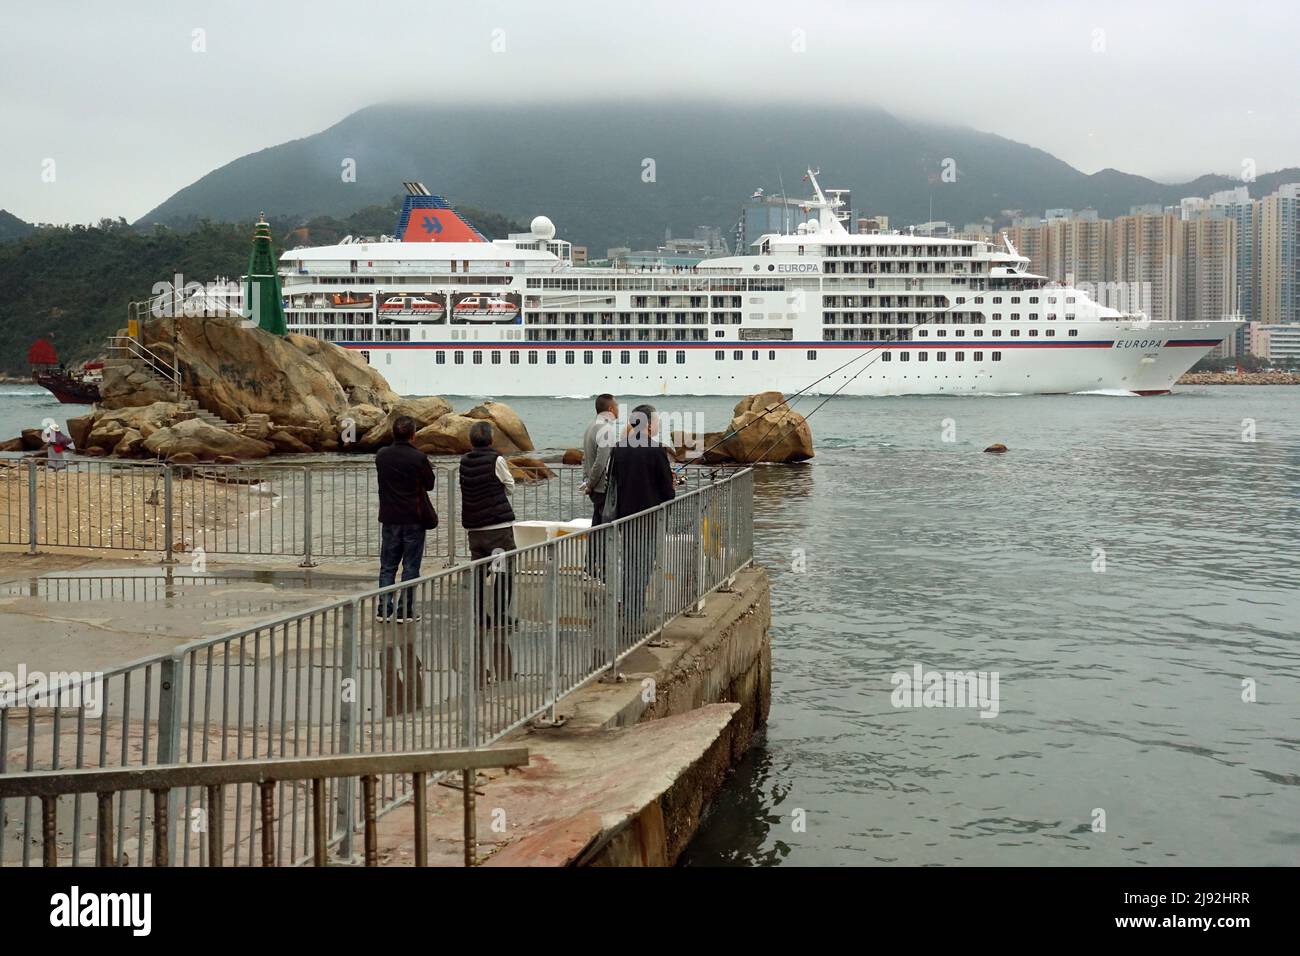 24.03.2019, Hongkong, Hongkong, China - das Schiff MS Europa verlässt den Hafen. 00S190324D467CAROEX.JPG [MODEL RELEASE: NO, PROPERTY RELEASE: NO (C) Stockfoto